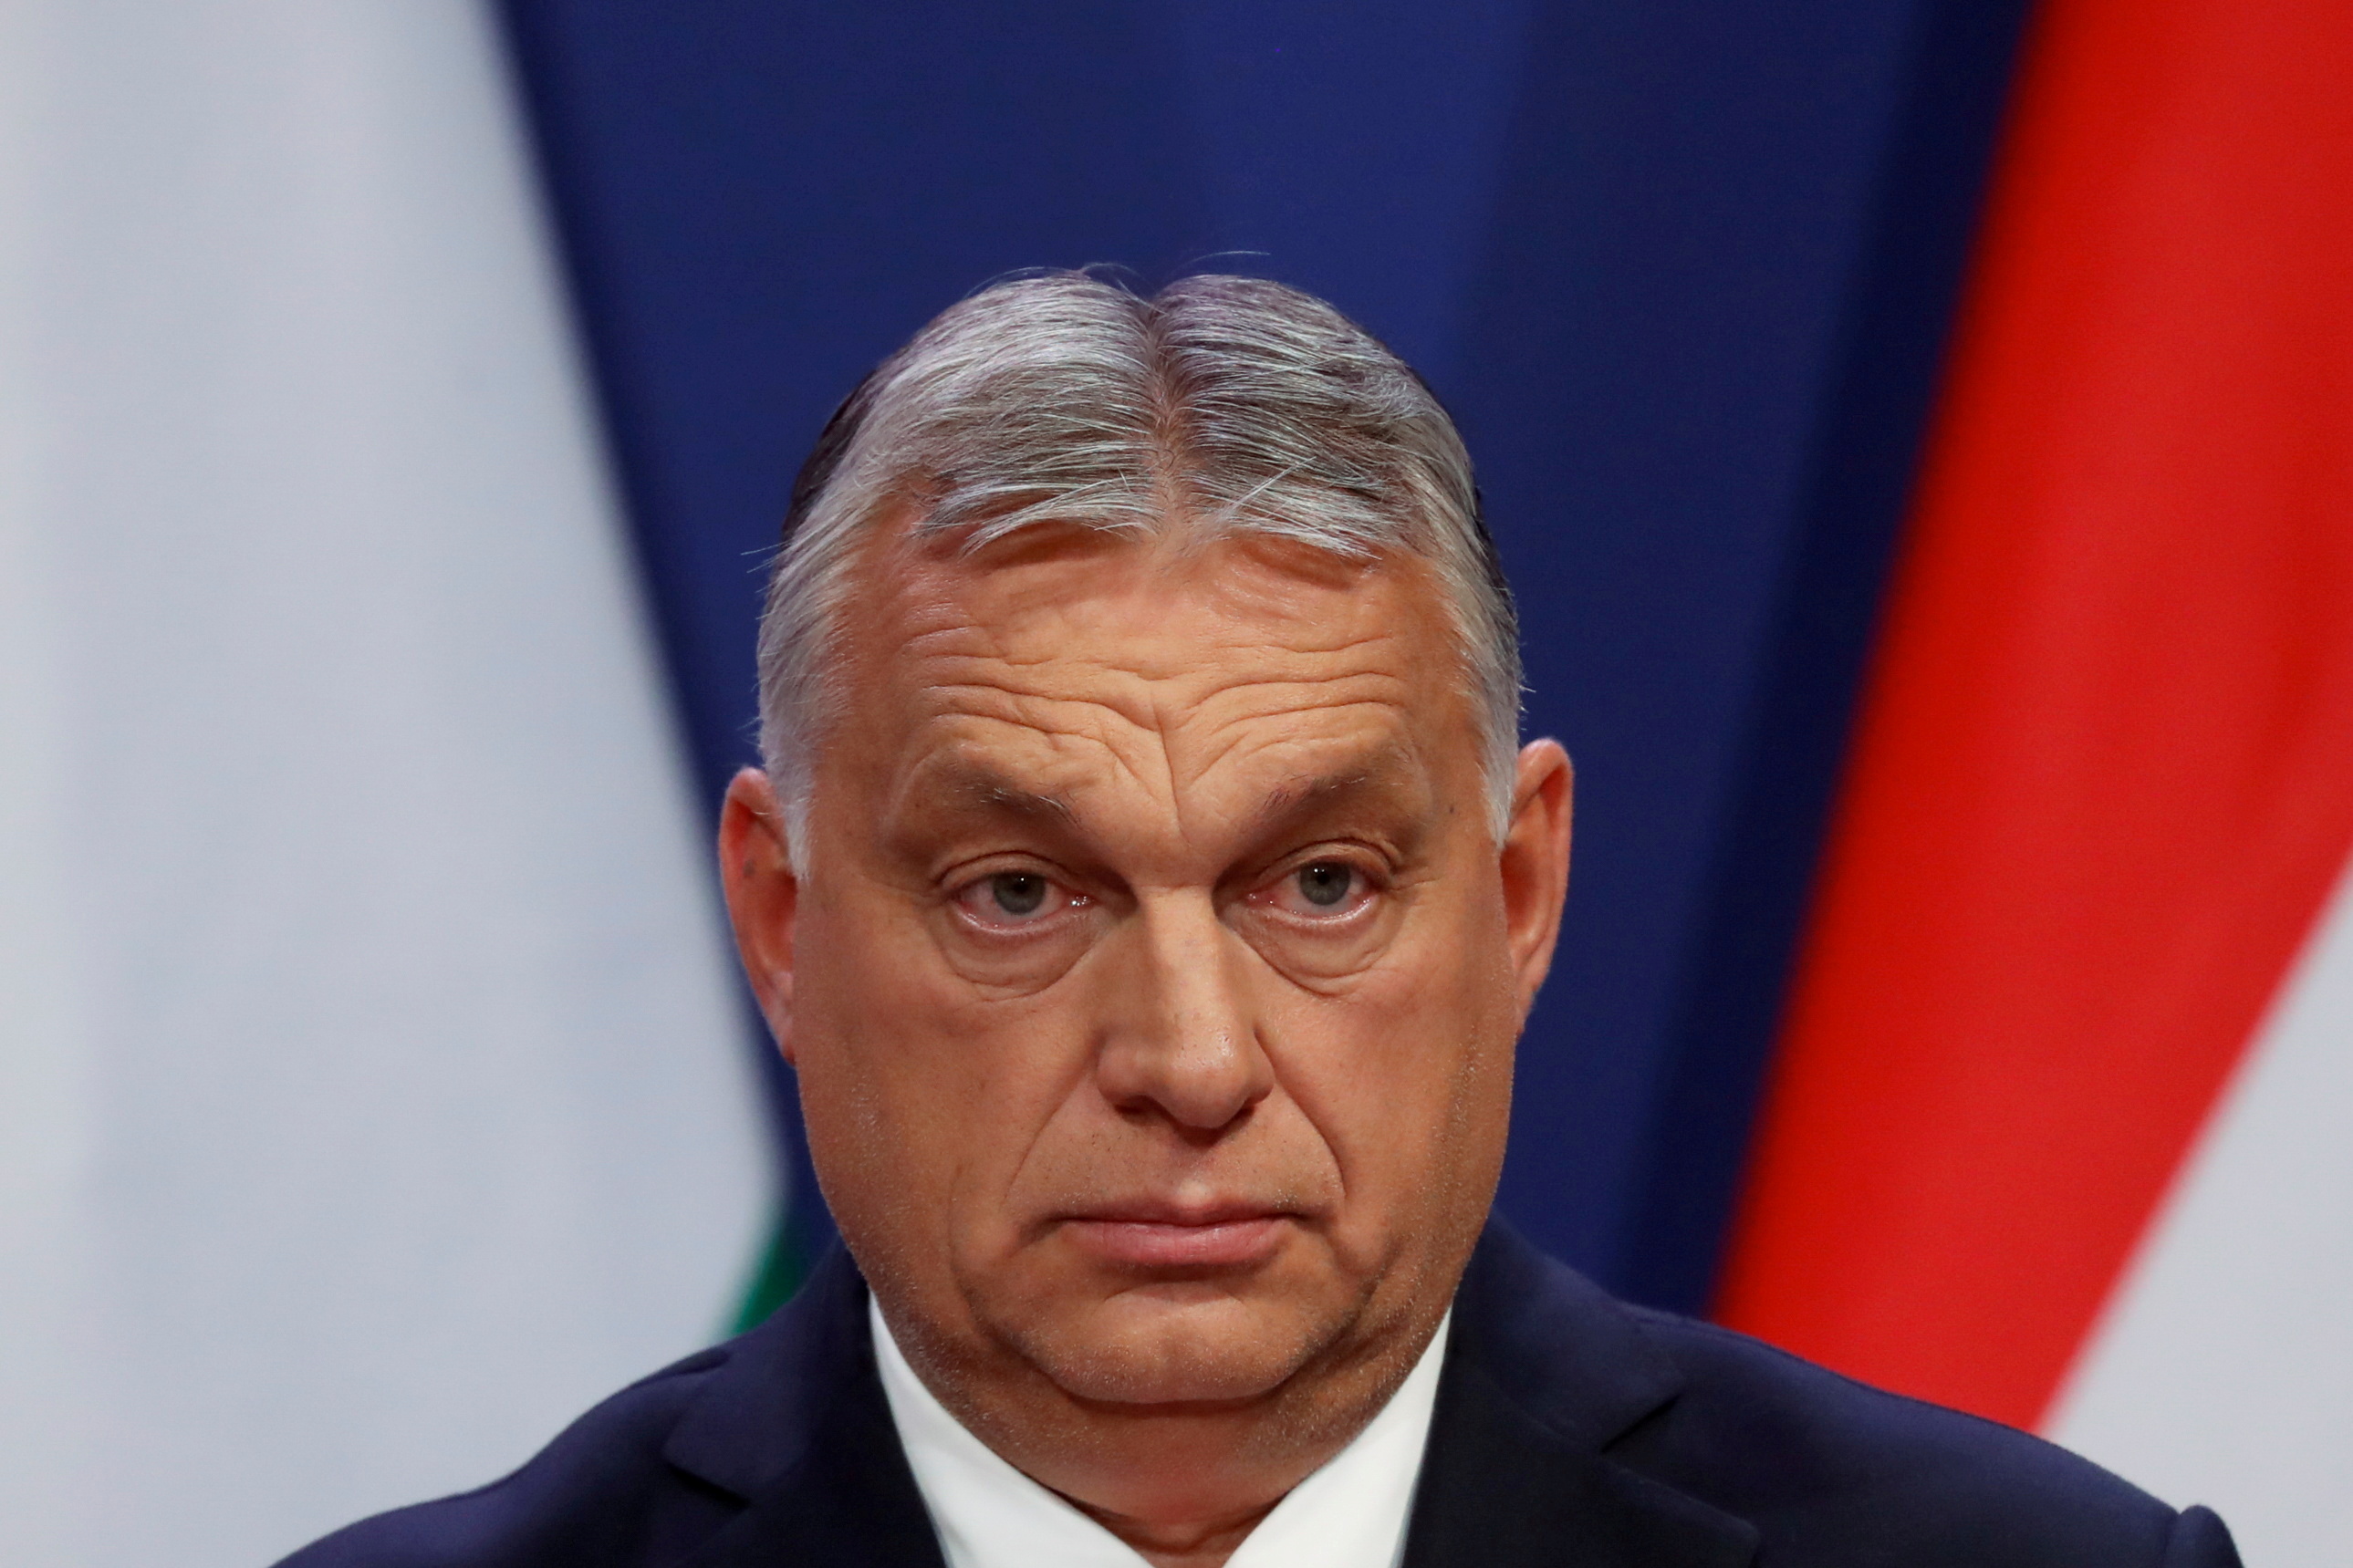 Hungarian PM Orban